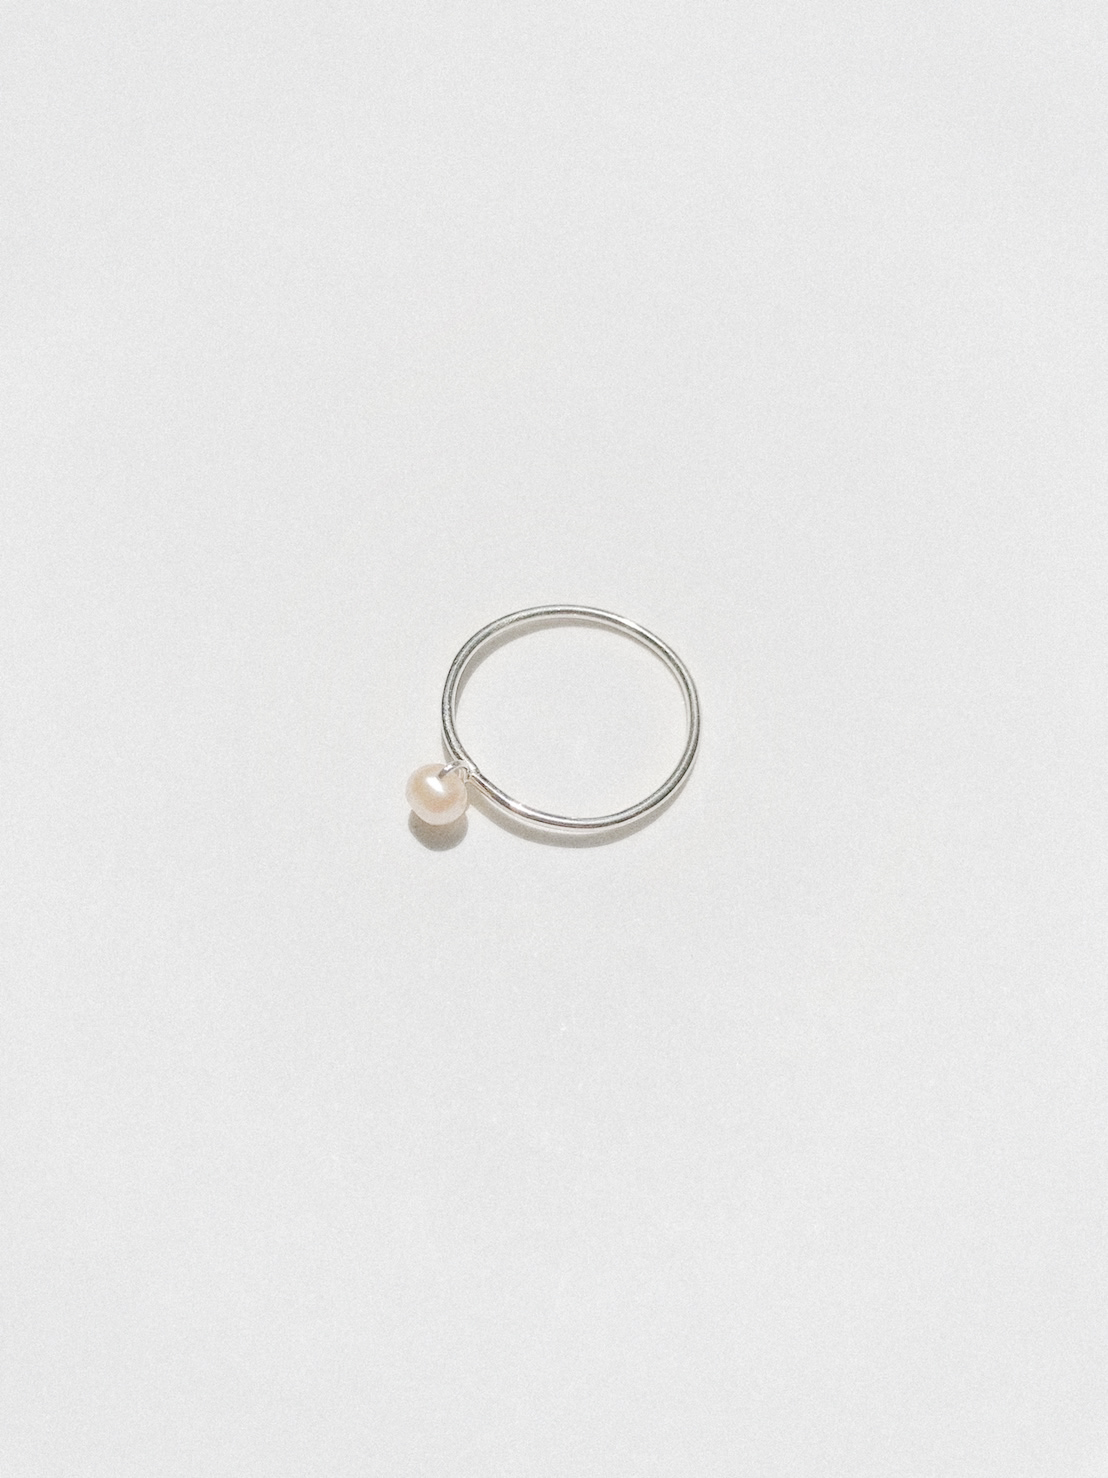 Petite Pearl Ring1.jpg